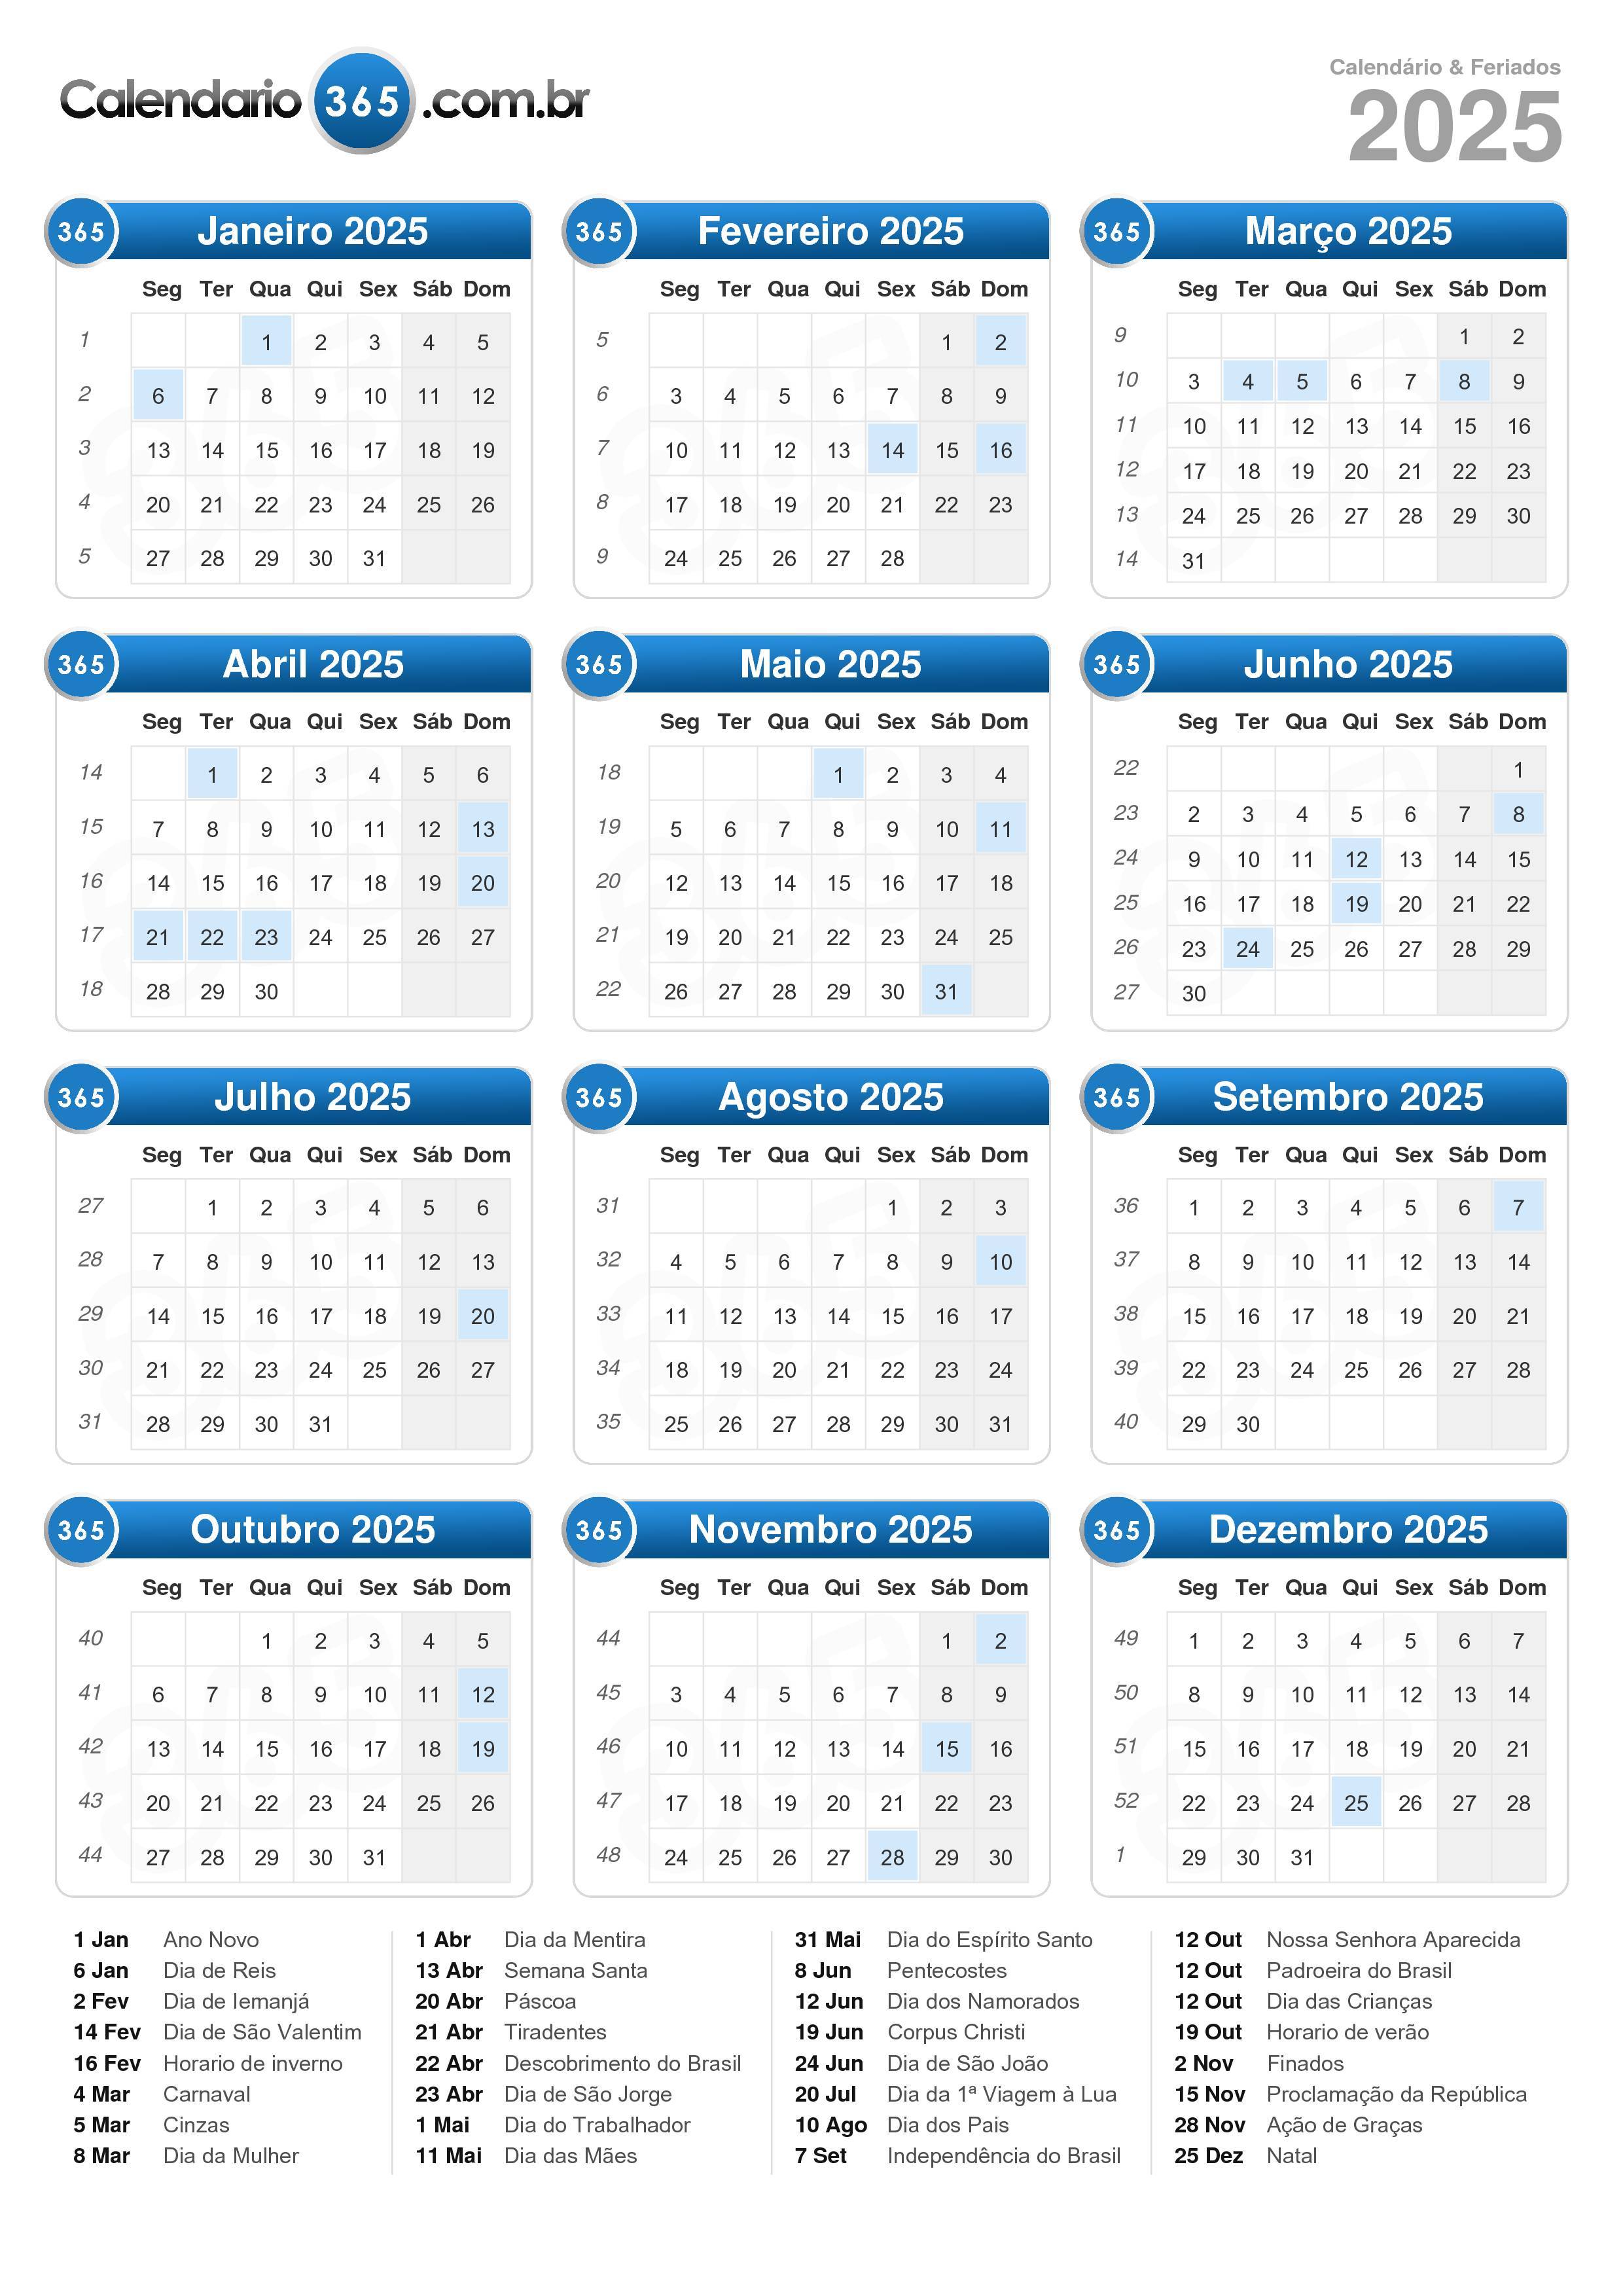 Calendario 2025 Guipuzcoa 